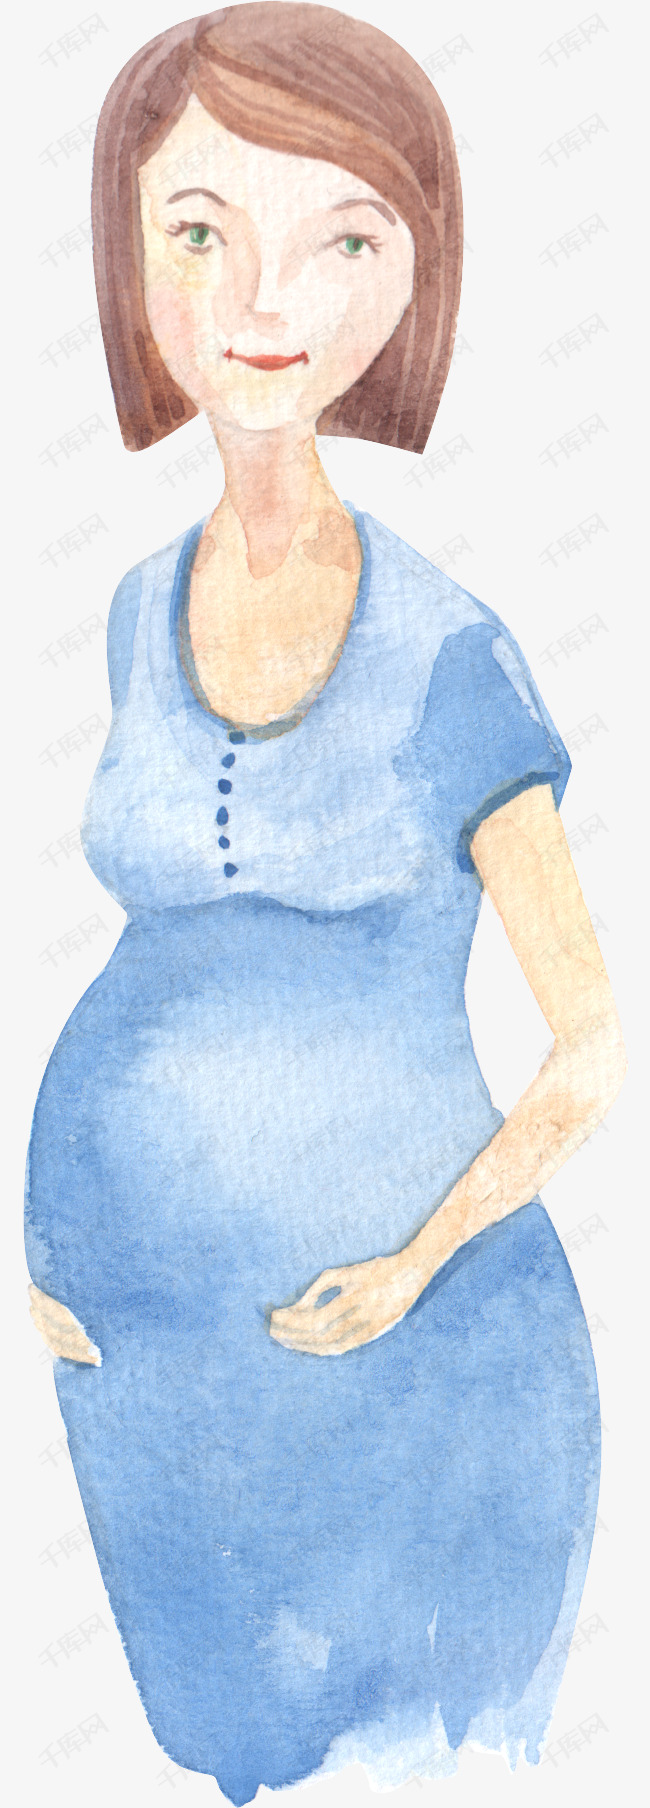 怀孕的准妈妈手绘图的素材免抠怀孕孕妇人物准妈妈大肚子胎儿